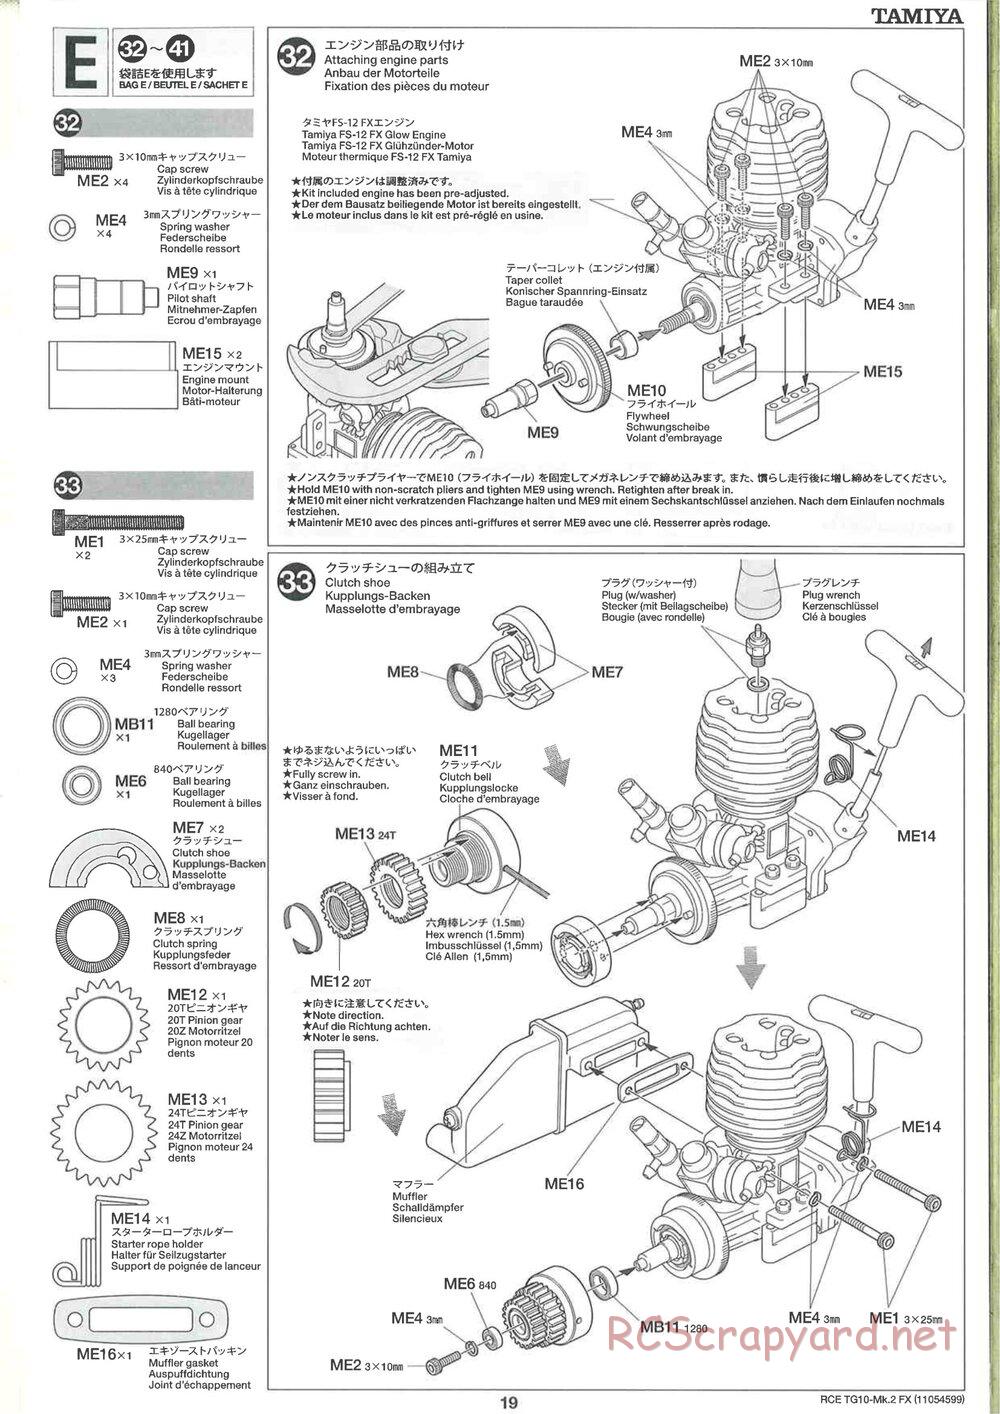 Tamiya - TG10 Mk.2 FX Chassis - Manual - Page 19